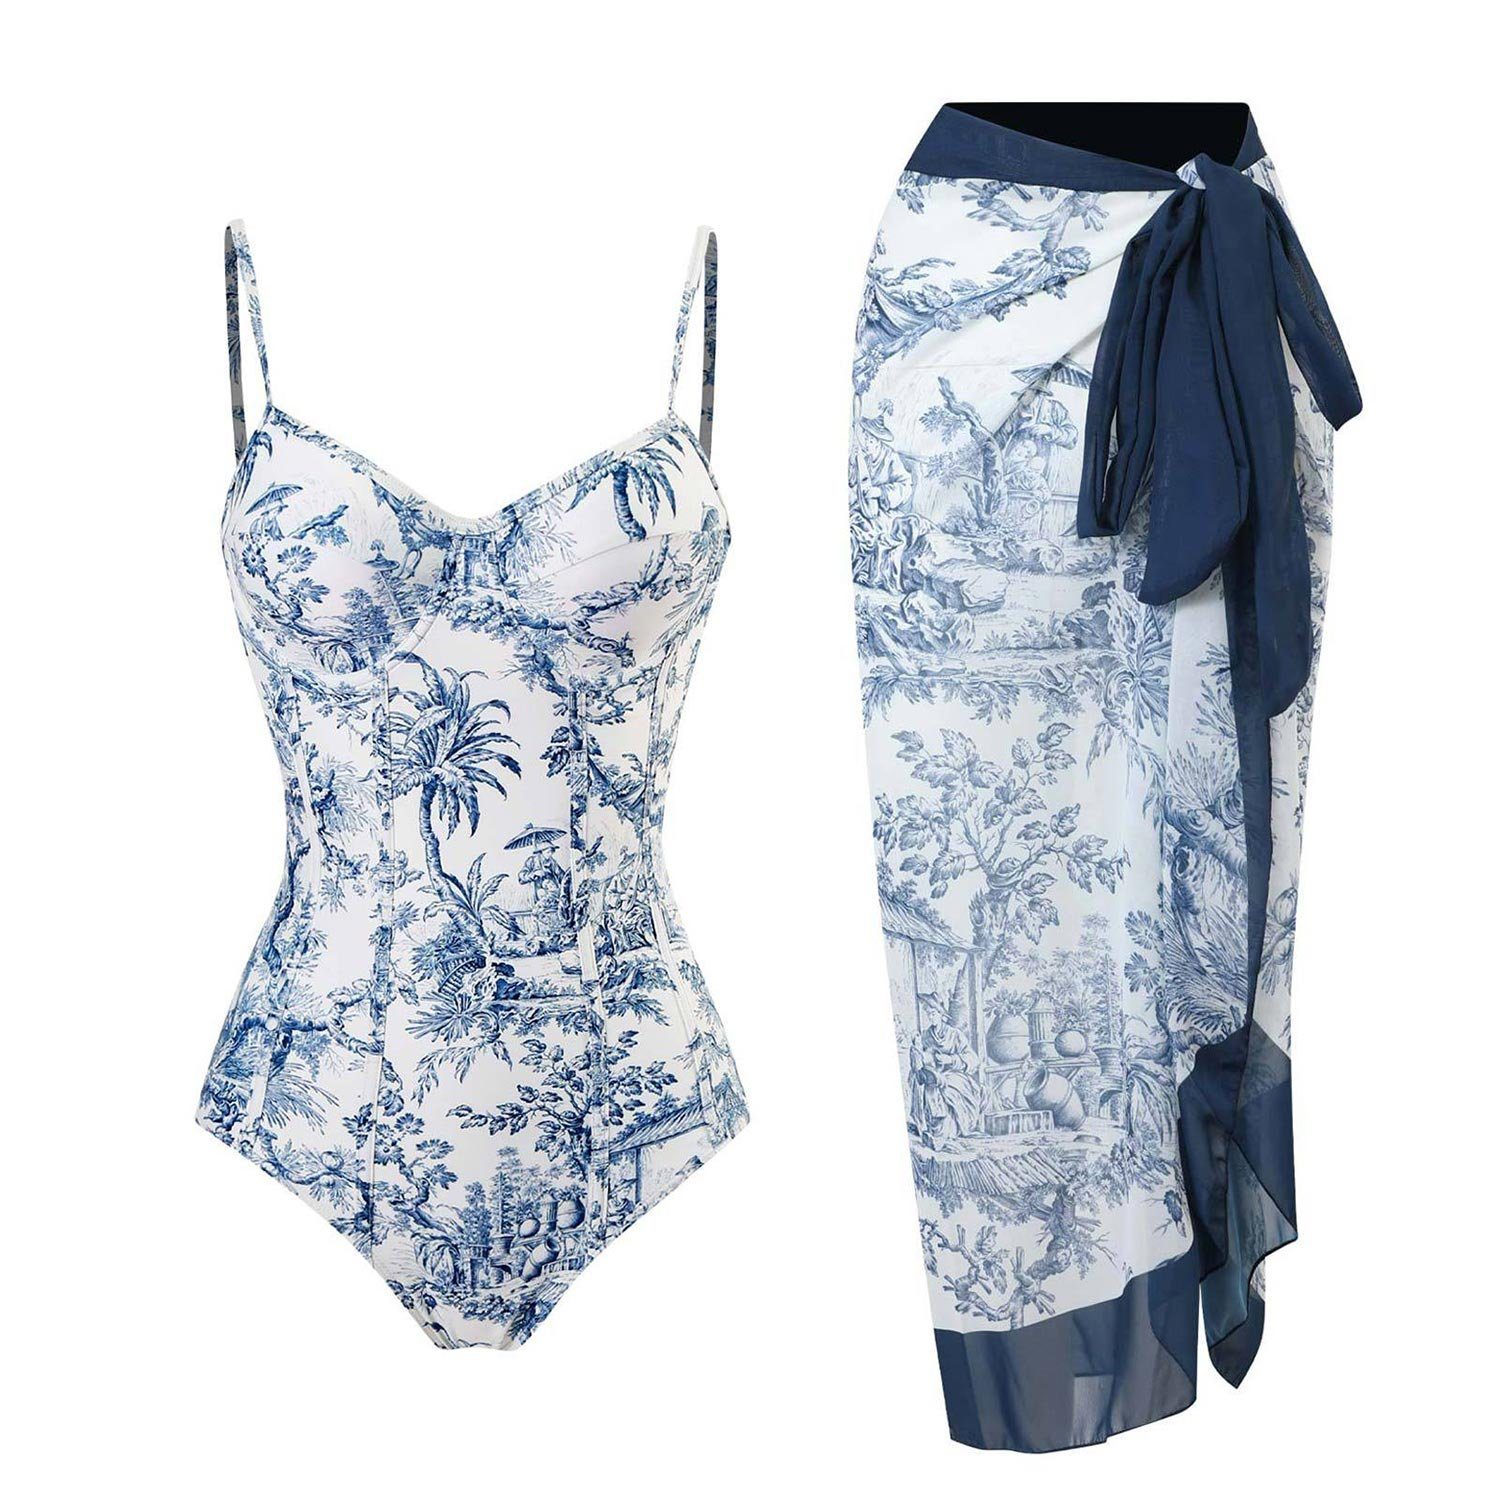 MAGICSHE Badeanzug Einteiliger Badeanzug Push ups+1 Set Vintage bedruckter Badeanzug Sexy High Waisted Sport Badeanzug für Damen blau